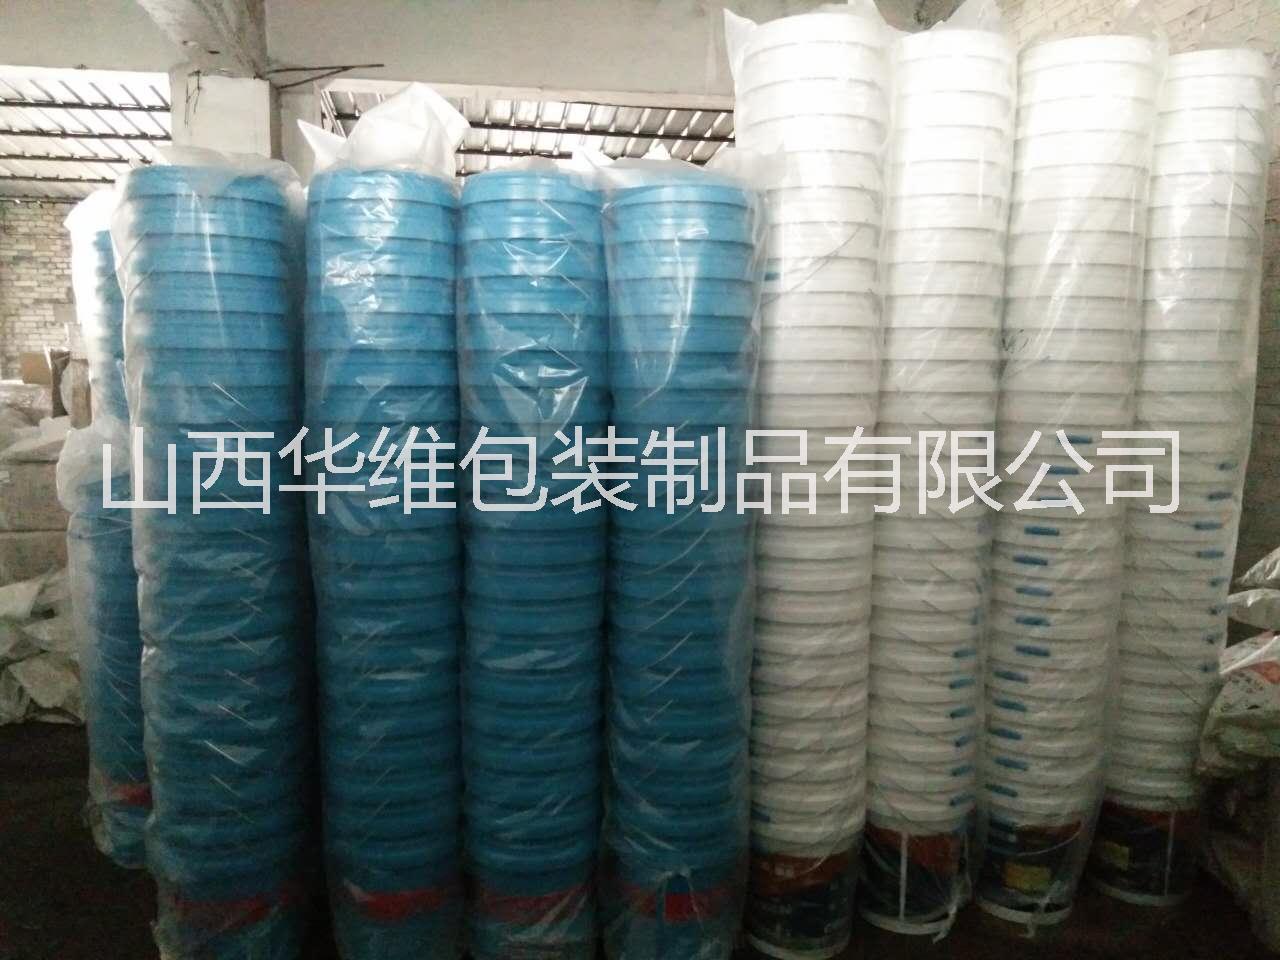 临汾市塑料乳胶桶、涂料桶、油墨桶、厂家